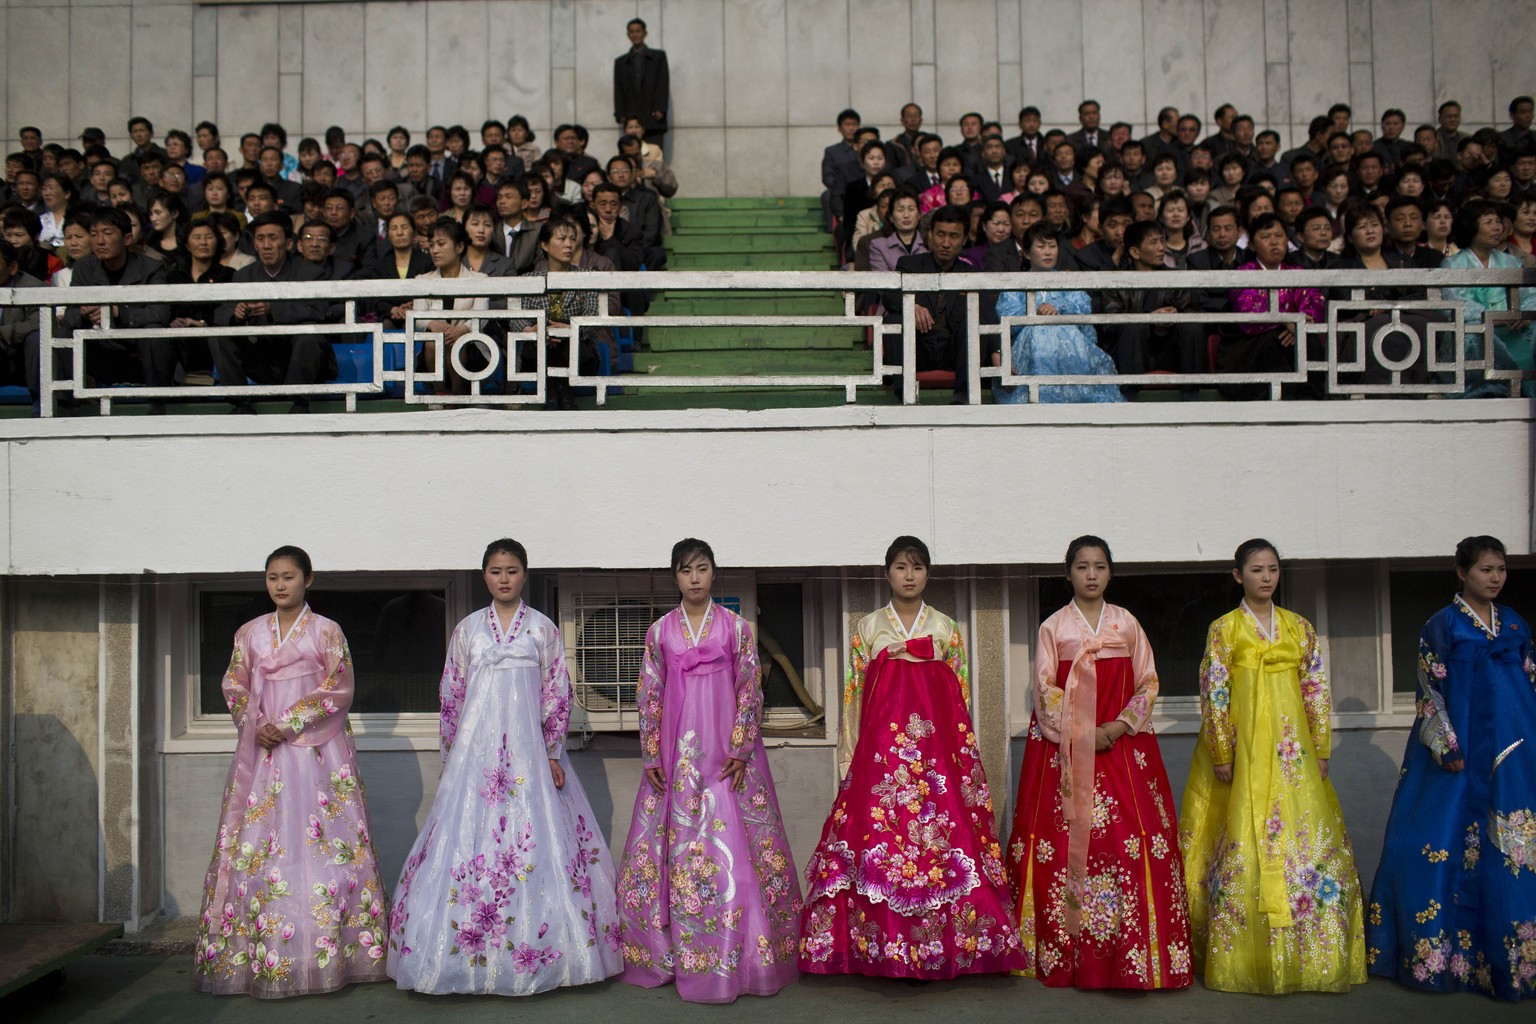 Traditionell gekleidete Frauen im Stadion in Nordkorea.